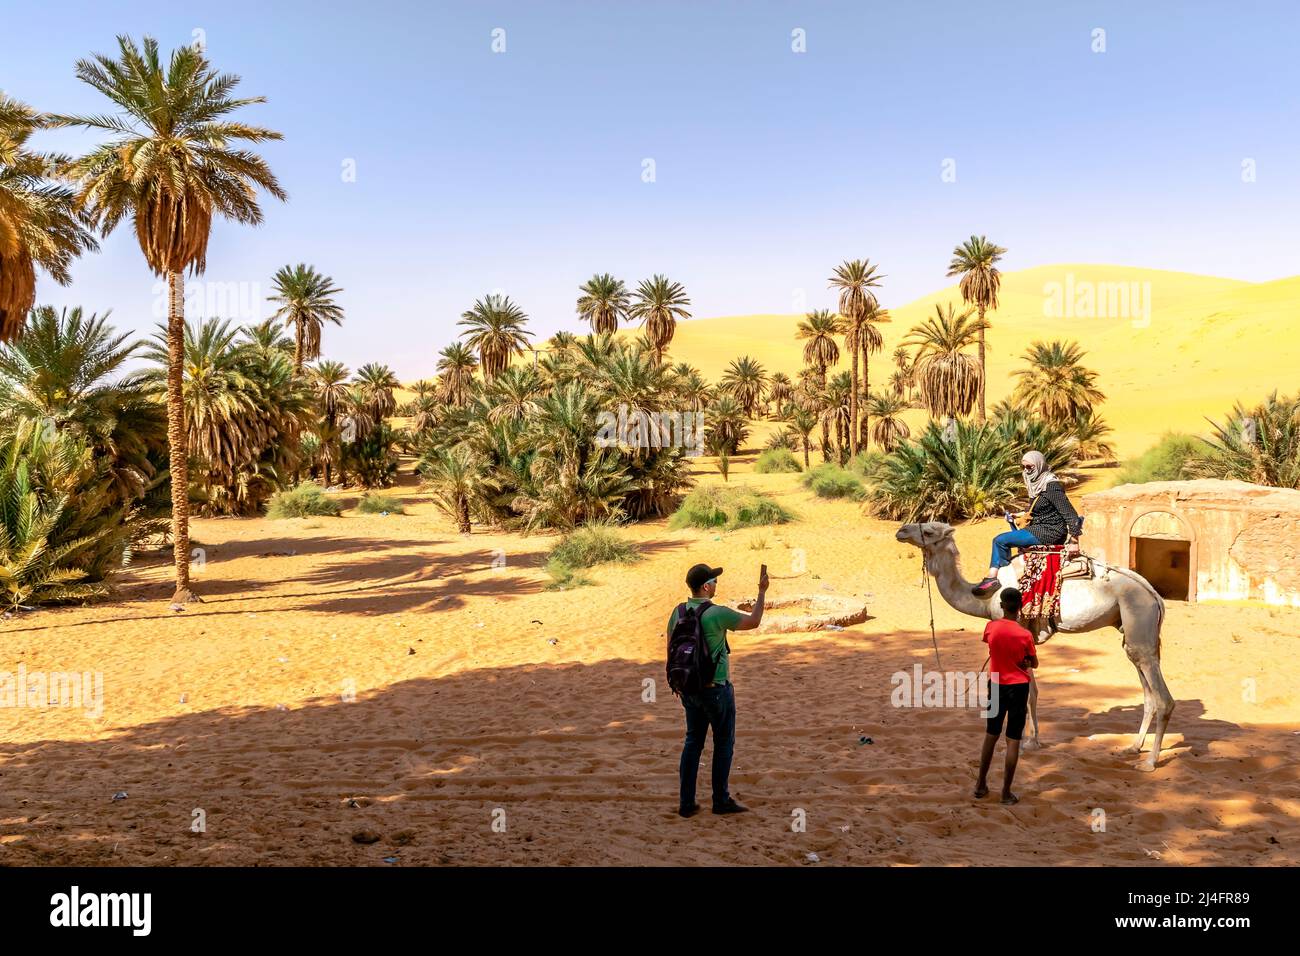 Turisti nel deserto del Sahara, donne con foulard su un cammello dromedario e un uomo che fotografa con smartphone. Tuareg bambino guida locale in attesa. Foto Stock